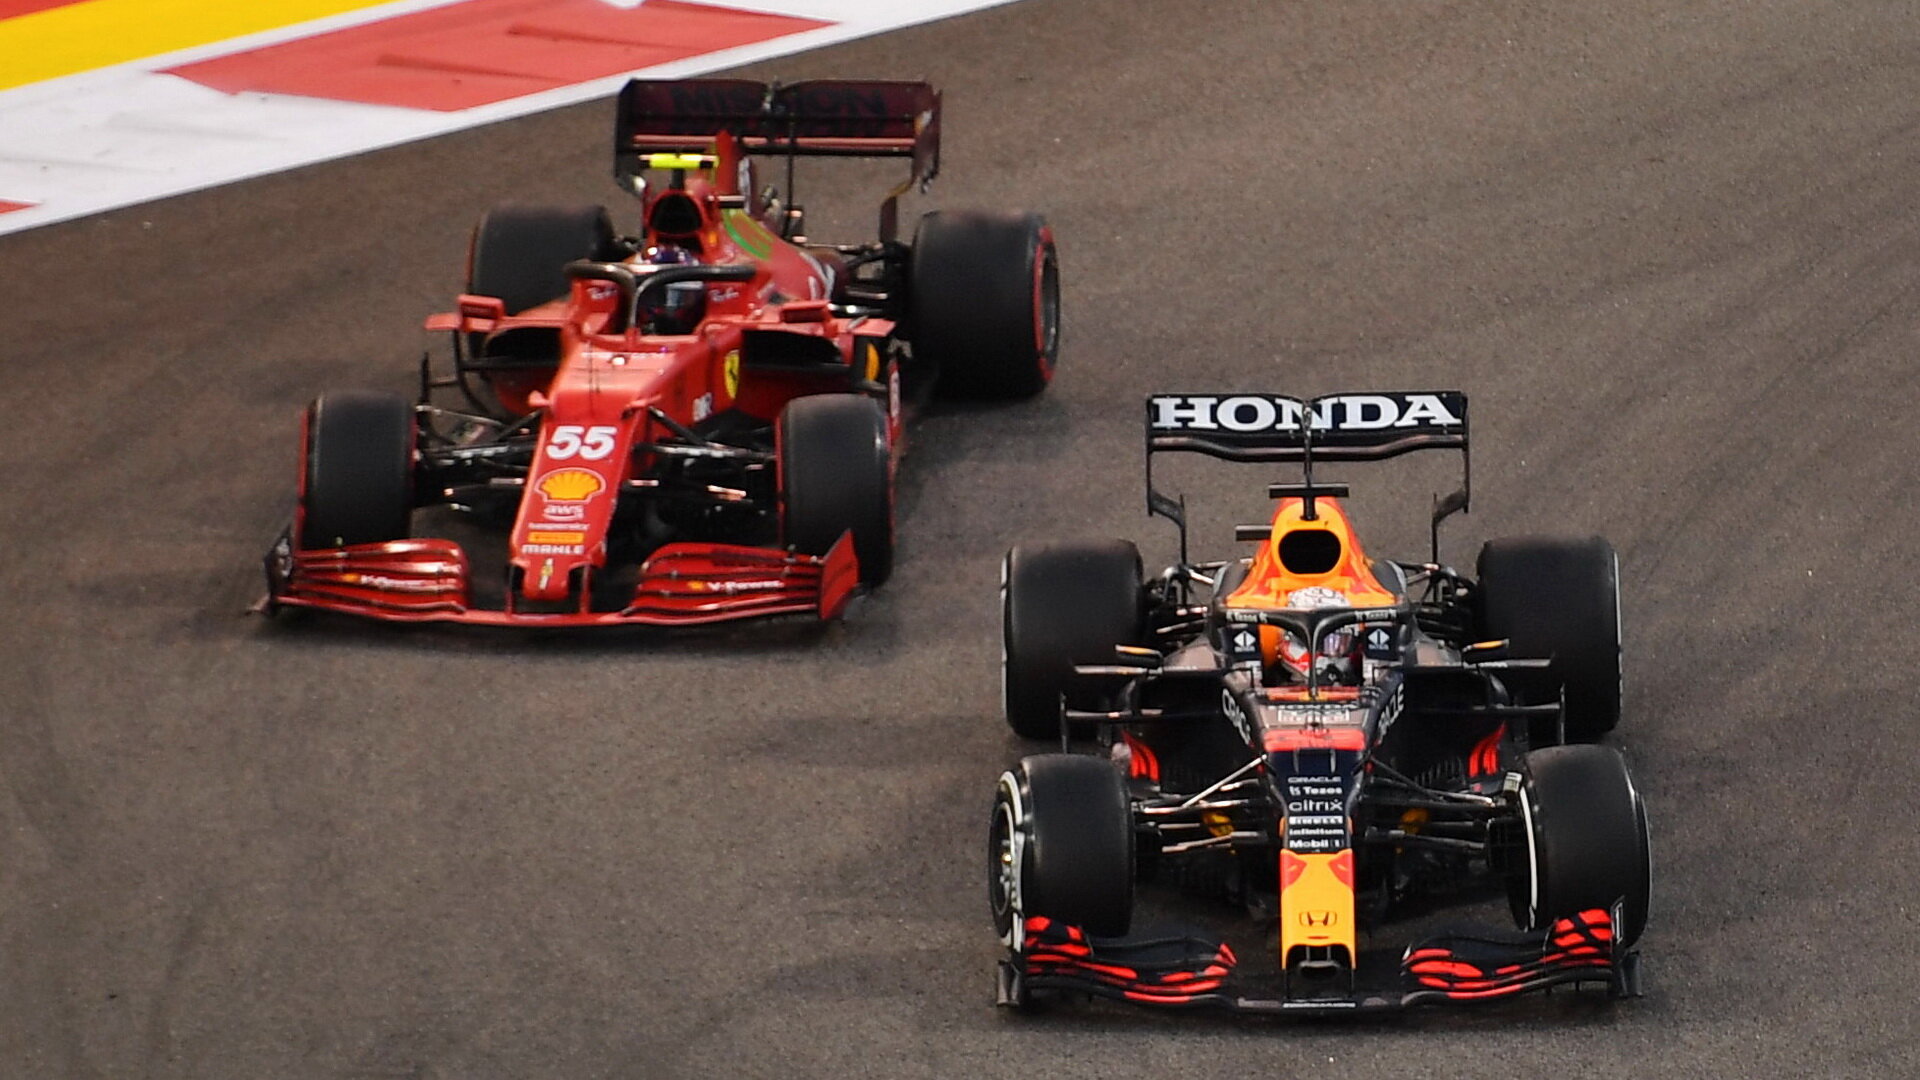 Max Verstappen a Carlos Sainz v závodě v Abú Zabí